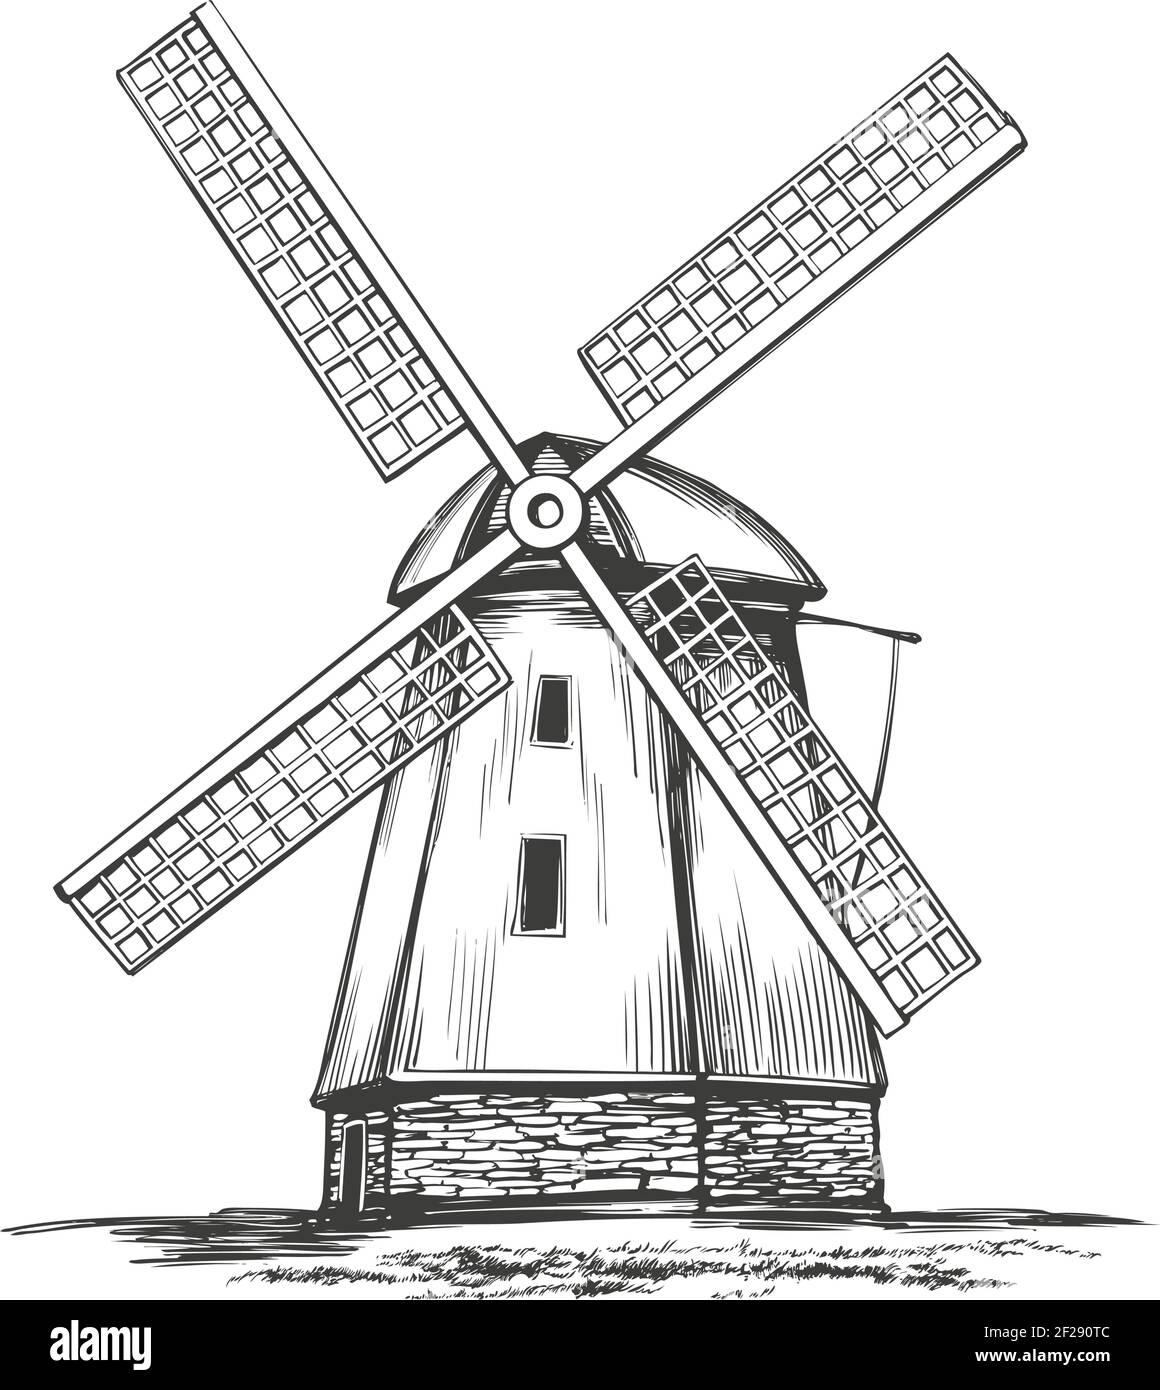 ancien moulin à vent, bâtiment architectural vintage dessin à la main illustration vectorielle esquisse réaliste. Illustration de Vecteur